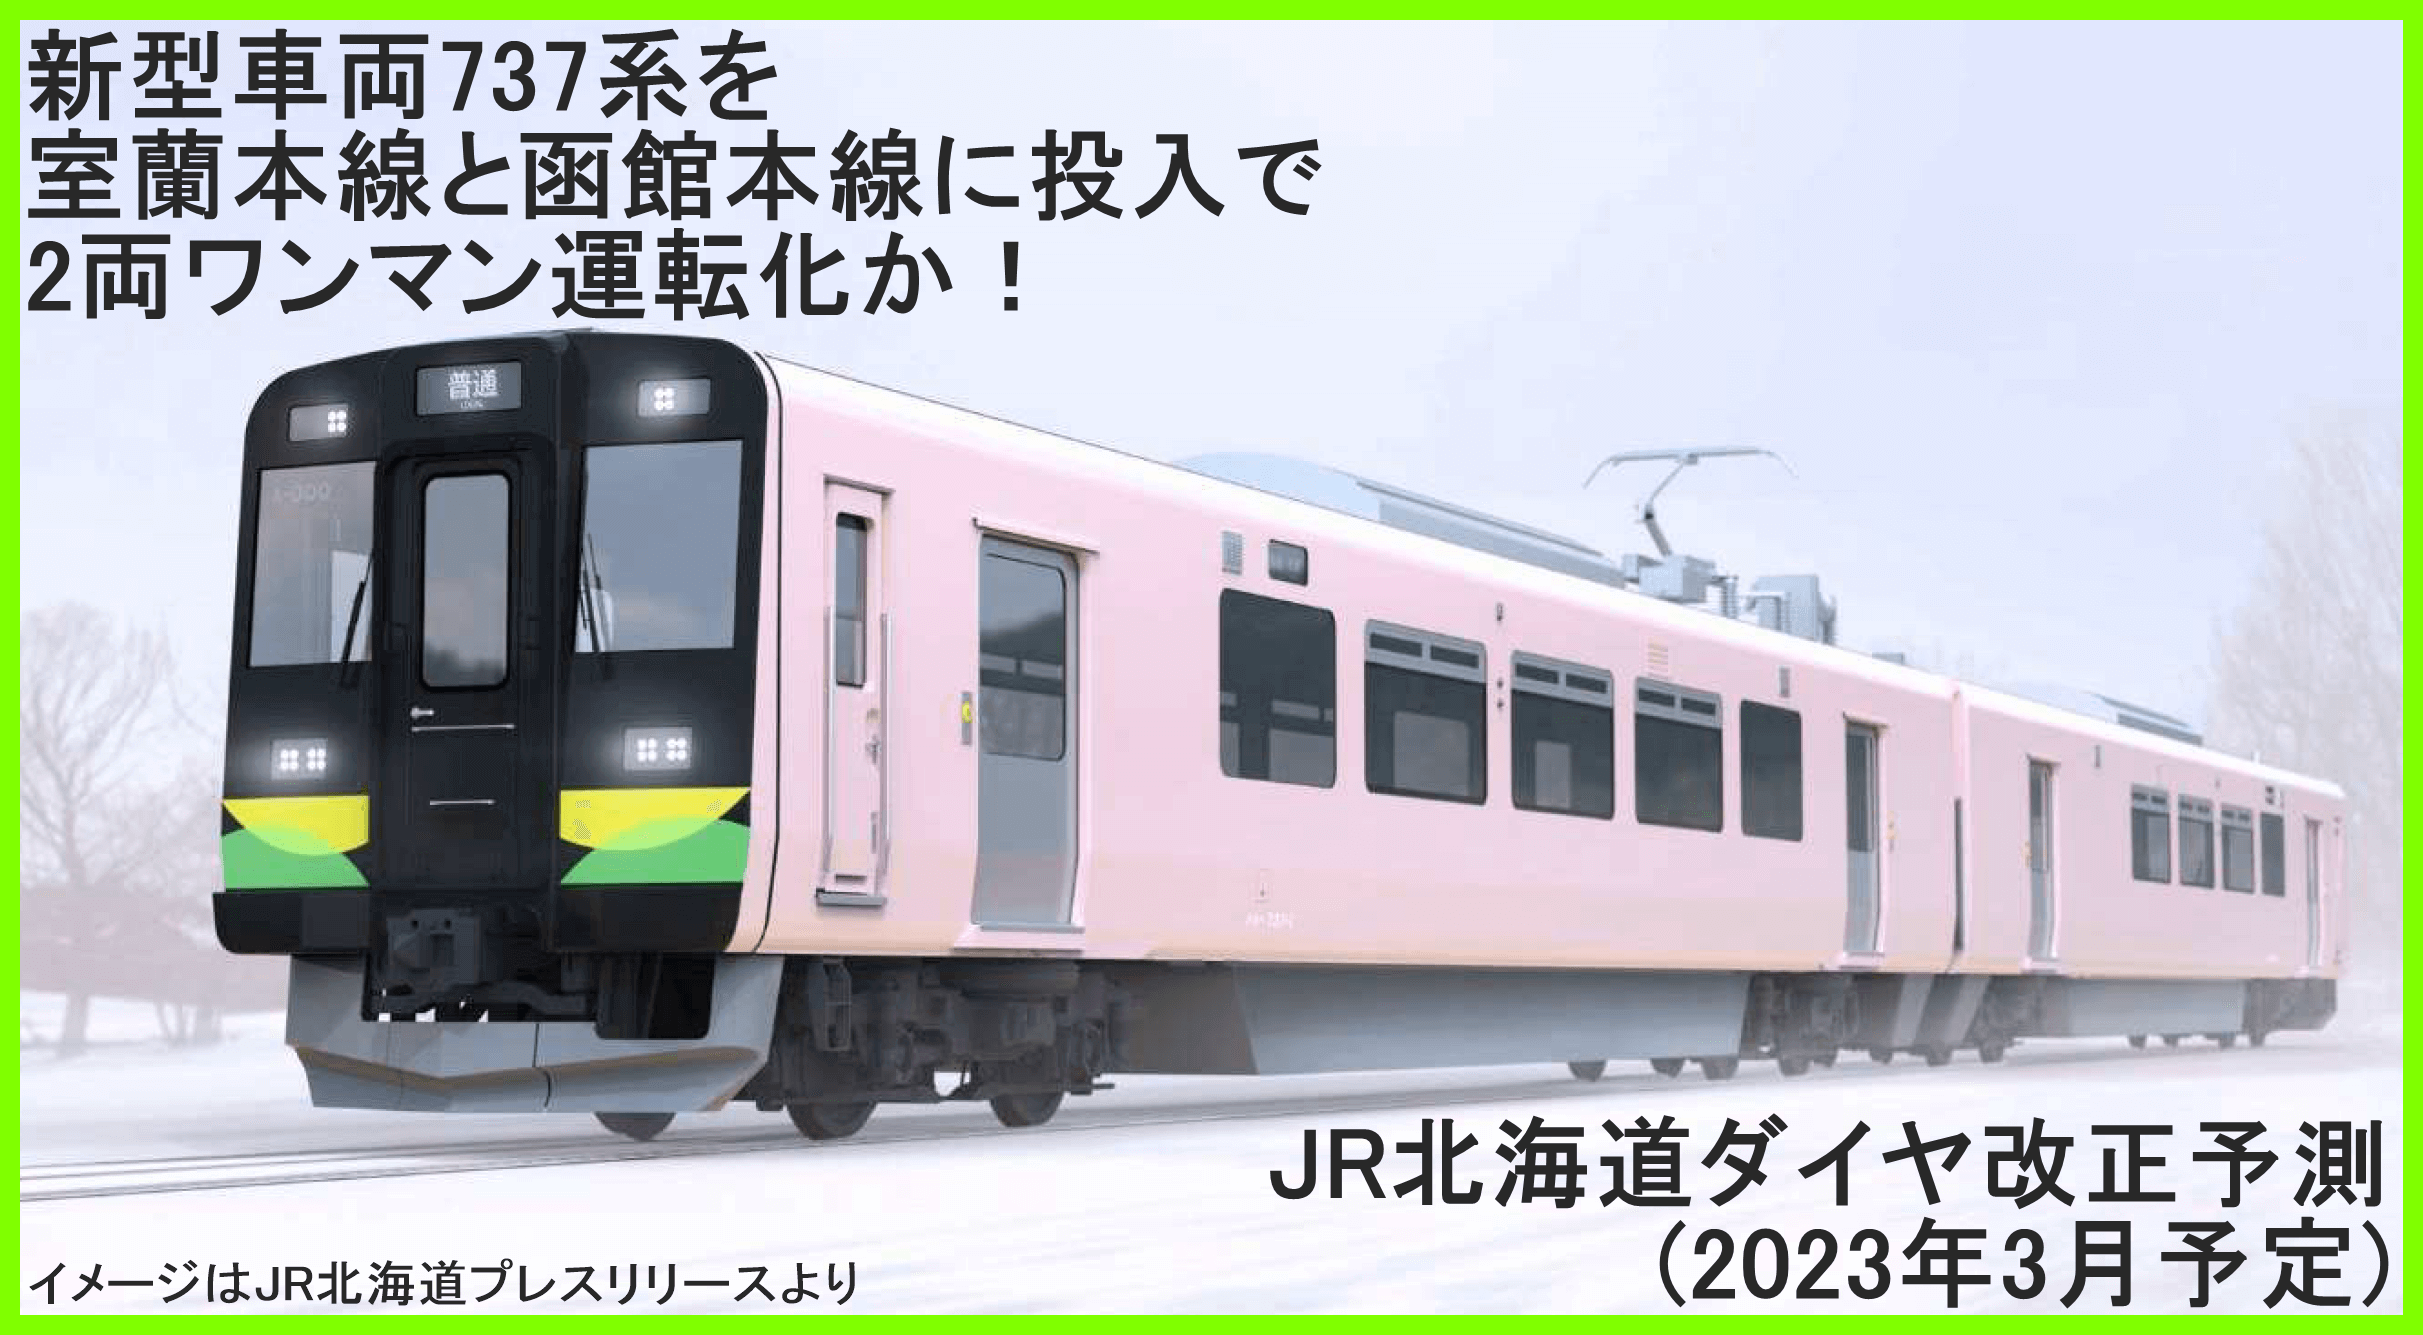 新型車両737系を室蘭本線と函館本線に投入で2両ワンマン運転化か！　JR北海道ダイヤ改正予測(2023年3月予定)